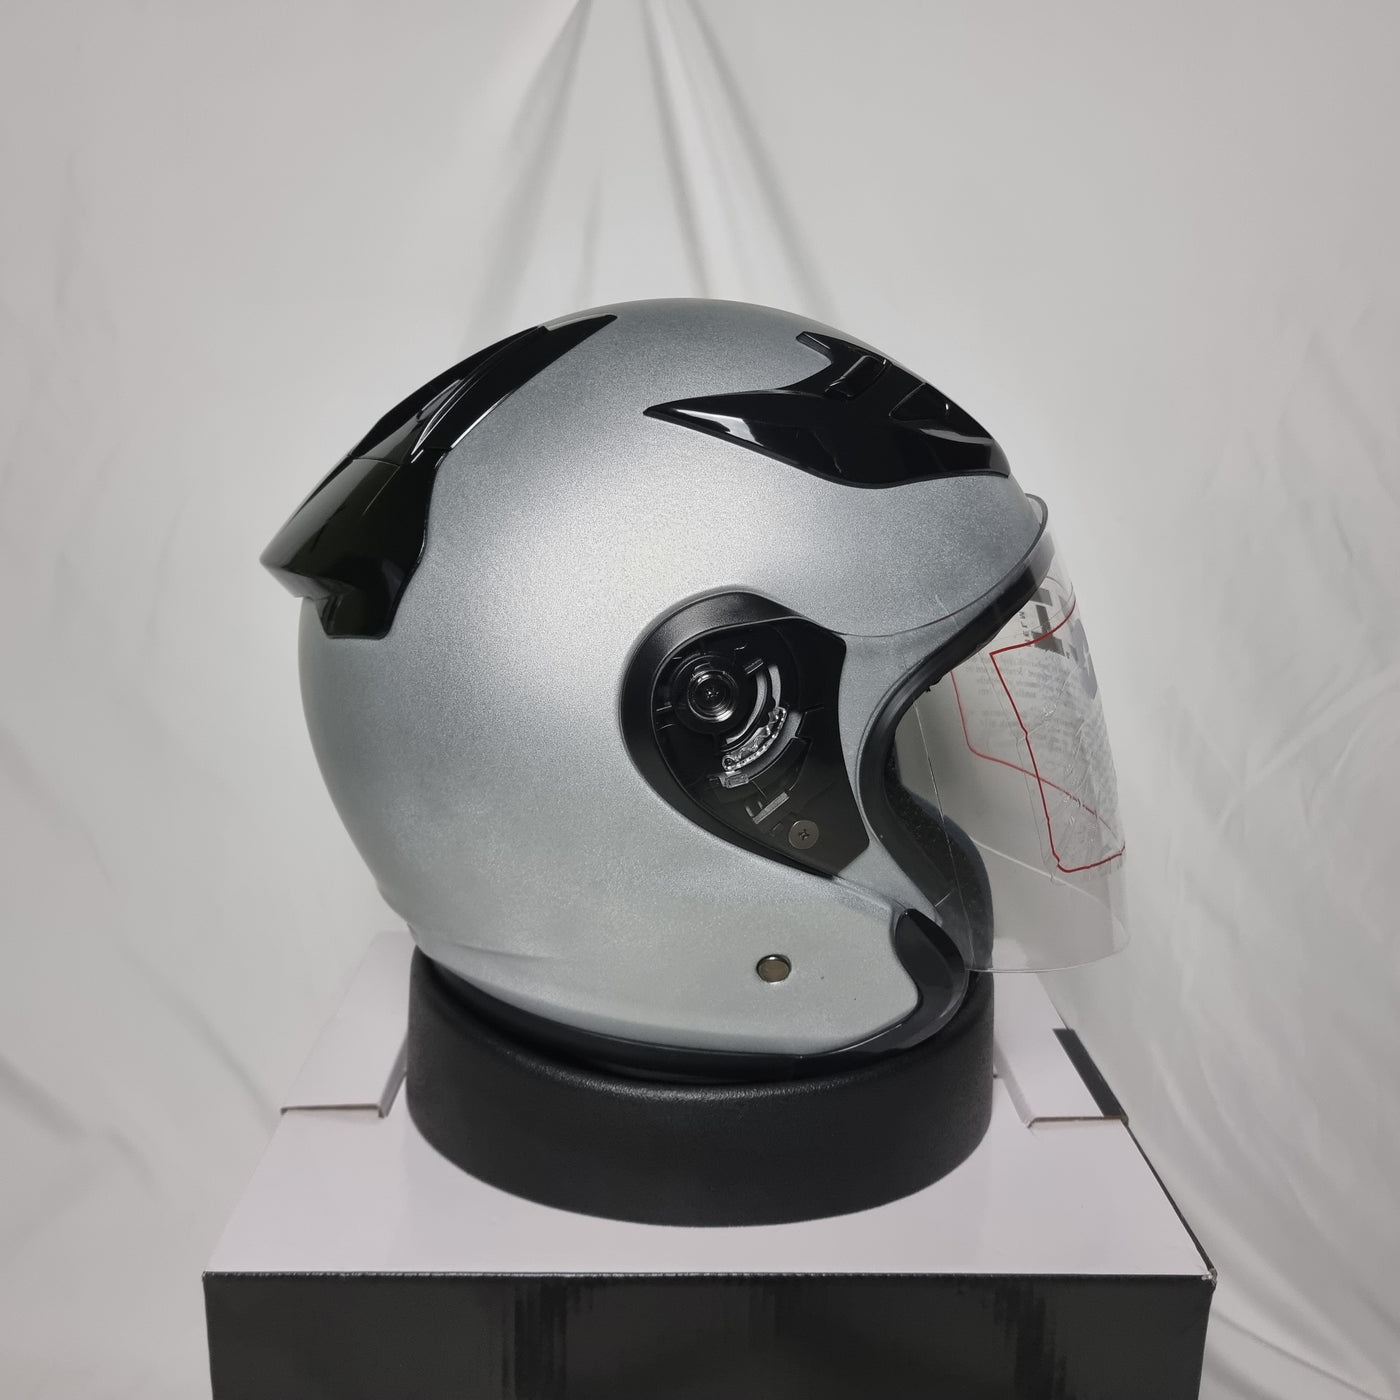 OZI 22 Matt Silver Helmet